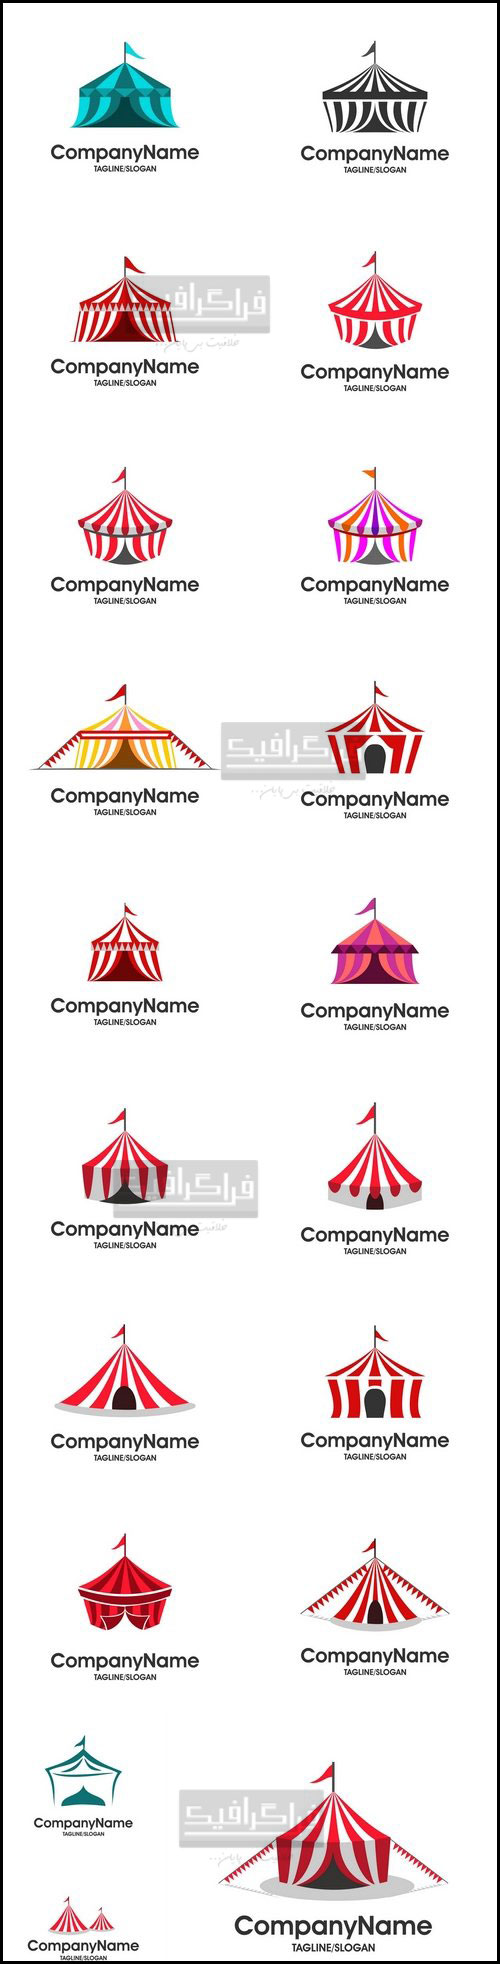 دانلود لوگو های چادر سیرک - Circus Tents Logos